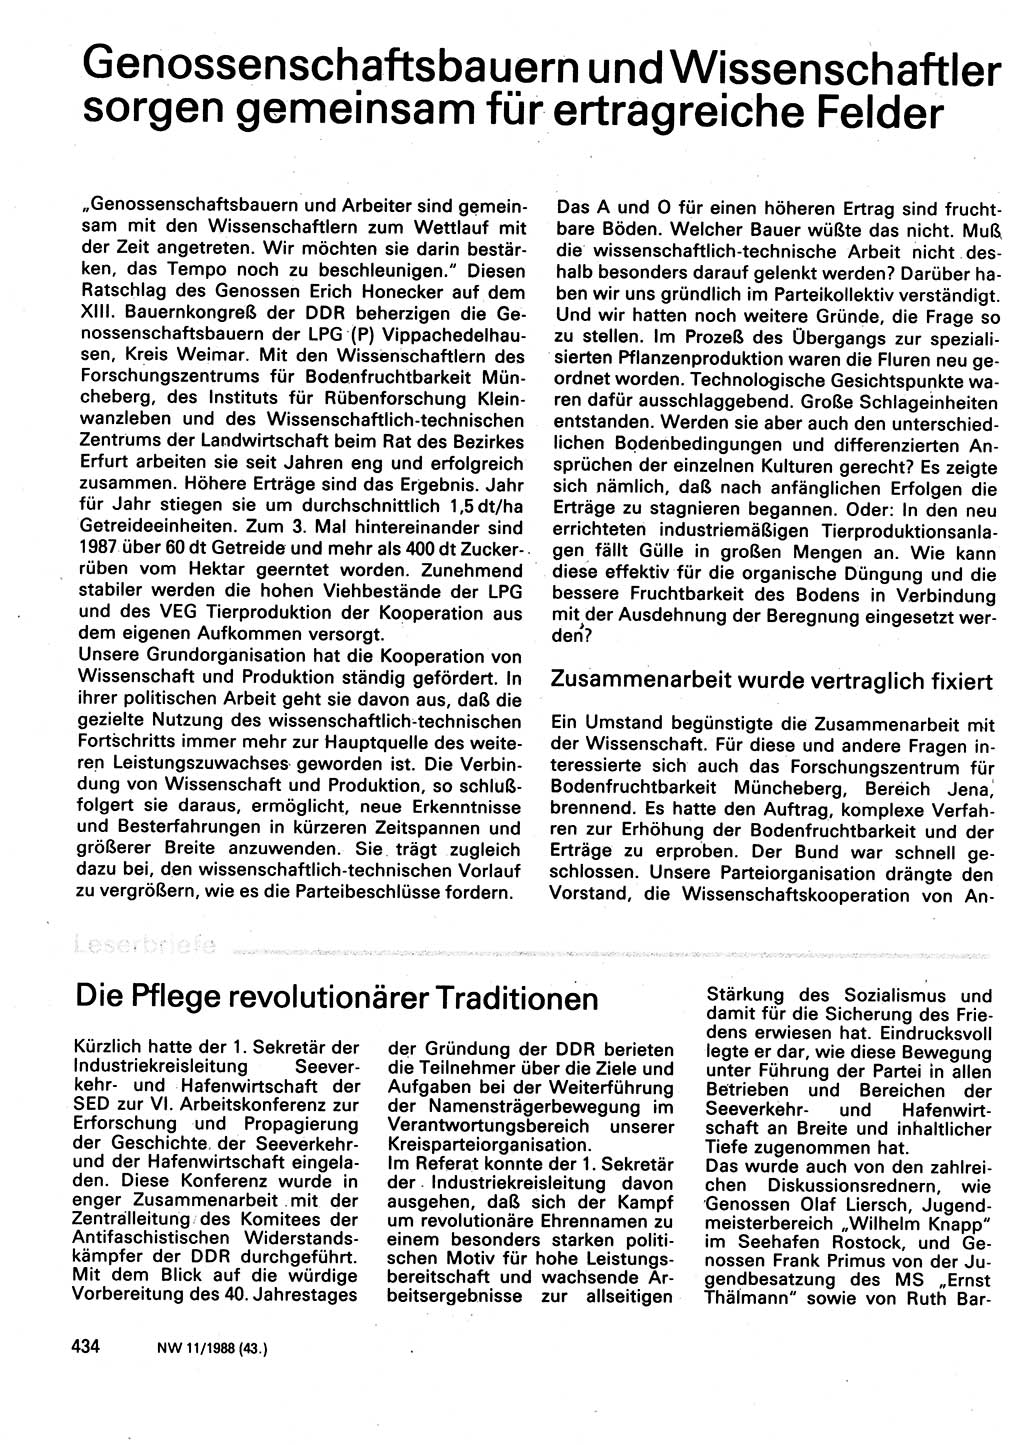 Neuer Weg (NW), Organ des Zentralkomitees (ZK) der SED (Sozialistische Einheitspartei Deutschlands) für Fragen des Parteilebens, 43. Jahrgang [Deutsche Demokratische Republik (DDR)] 1988, Seite 434 (NW ZK SED DDR 1988, S. 434)